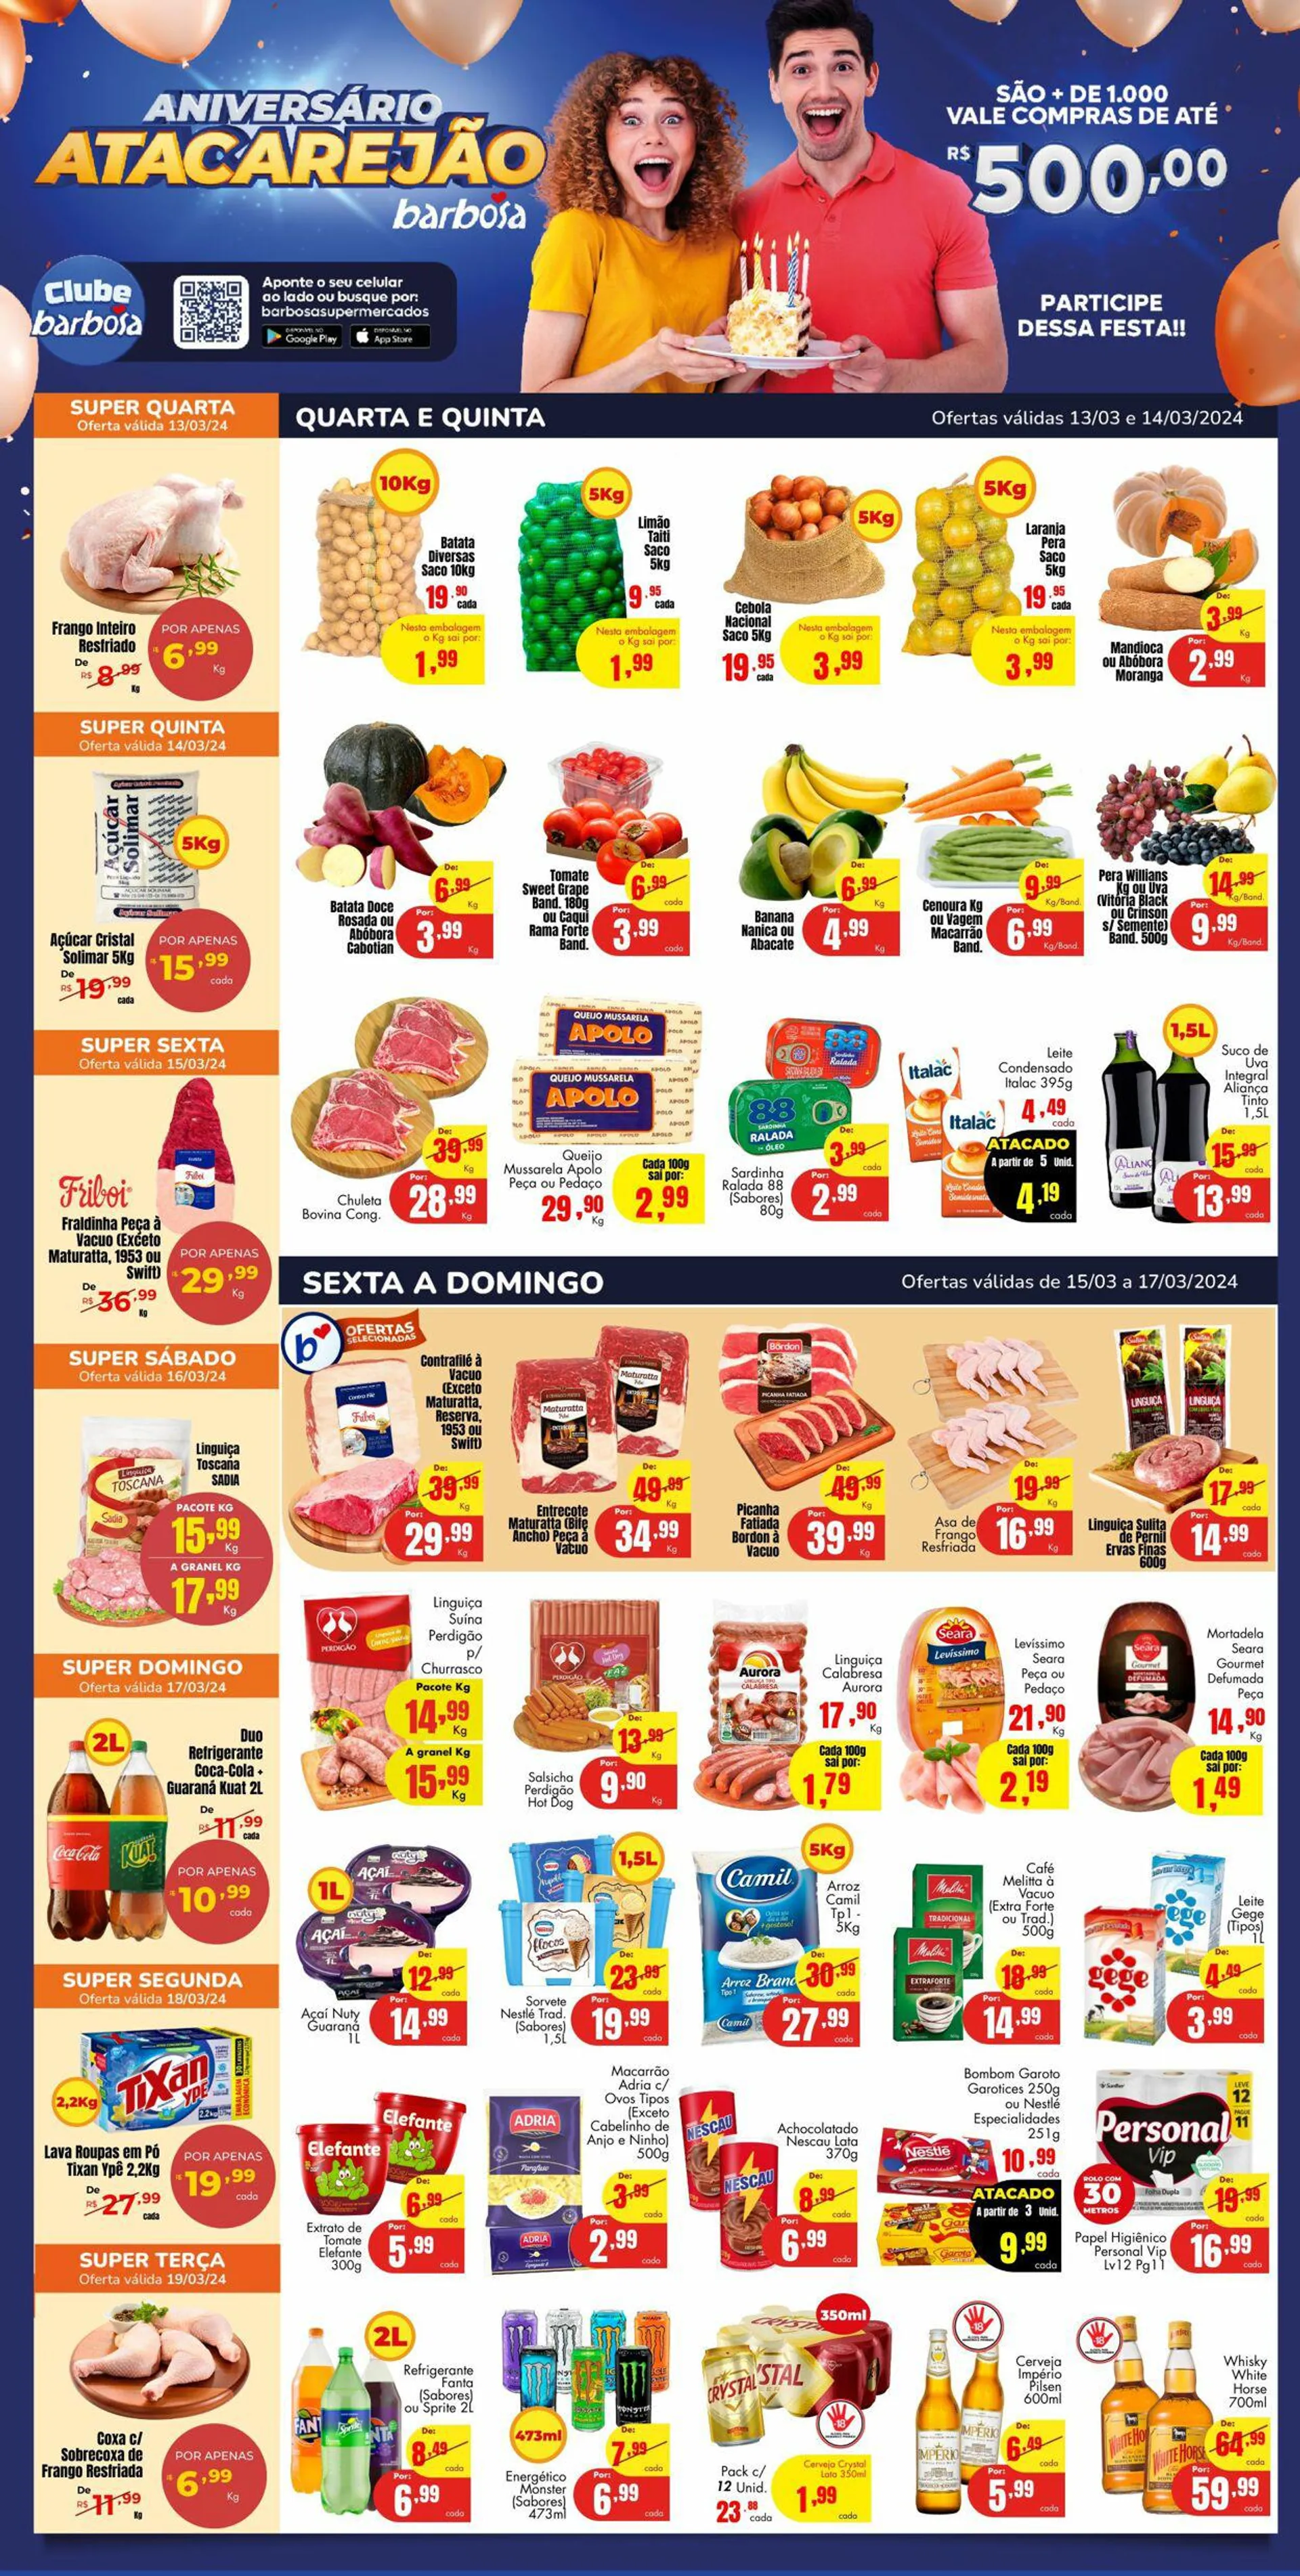 Encarte de Barbosa Supermercados 13 de março até 19 de março 2024 - Pagina 